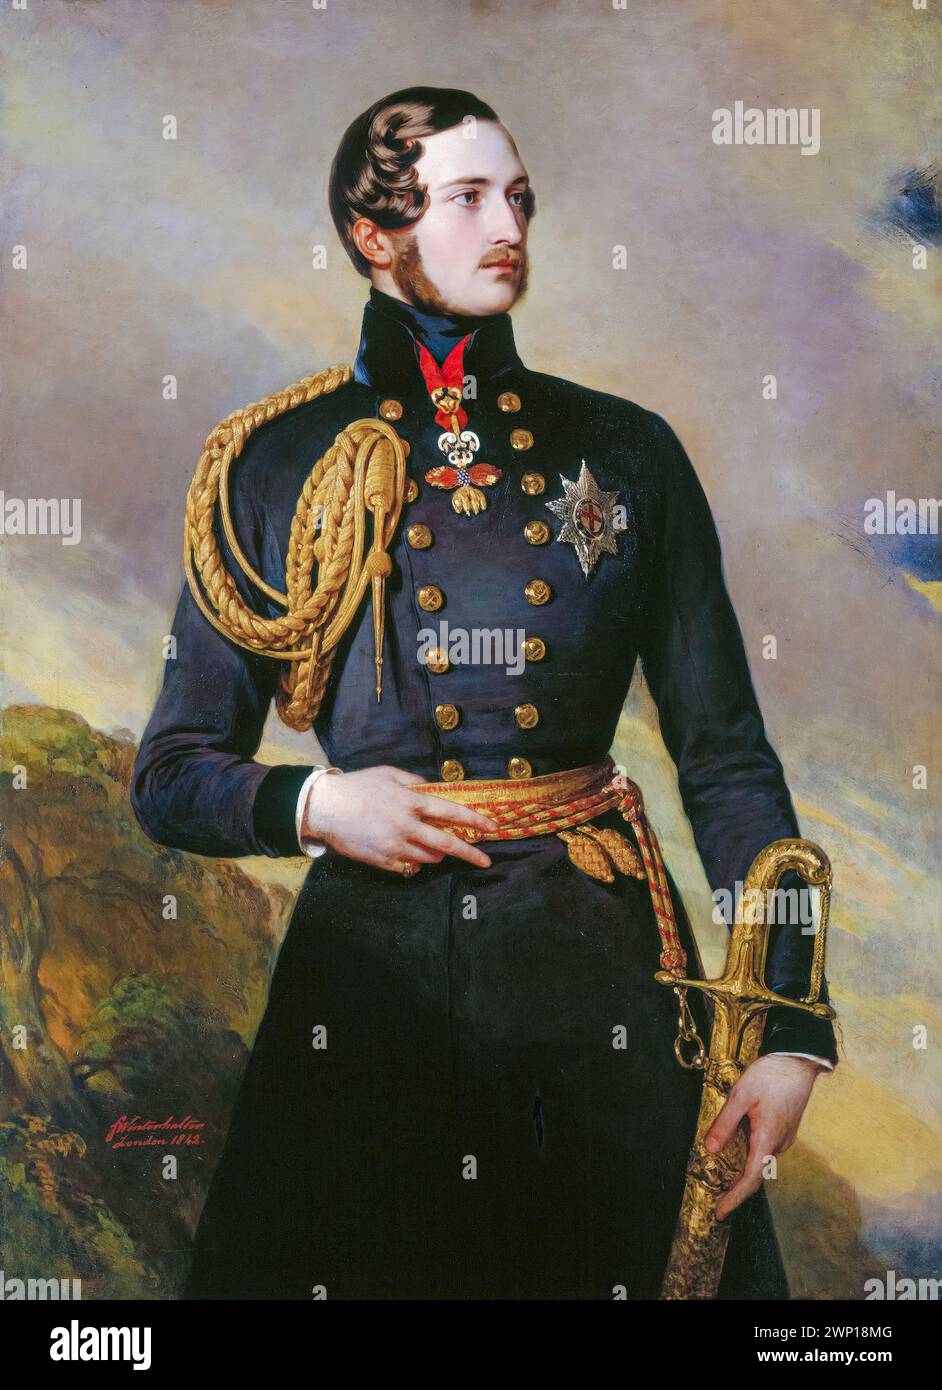 Prinz Albert von Sachsen-Coburg und Gotha (1819-1861) Gemahlin des britischen Monarchen 1840-1861, Portraitgemälde in Öl auf Leinwand von Frans Xaver Winterhalter, 1842 Stockfoto